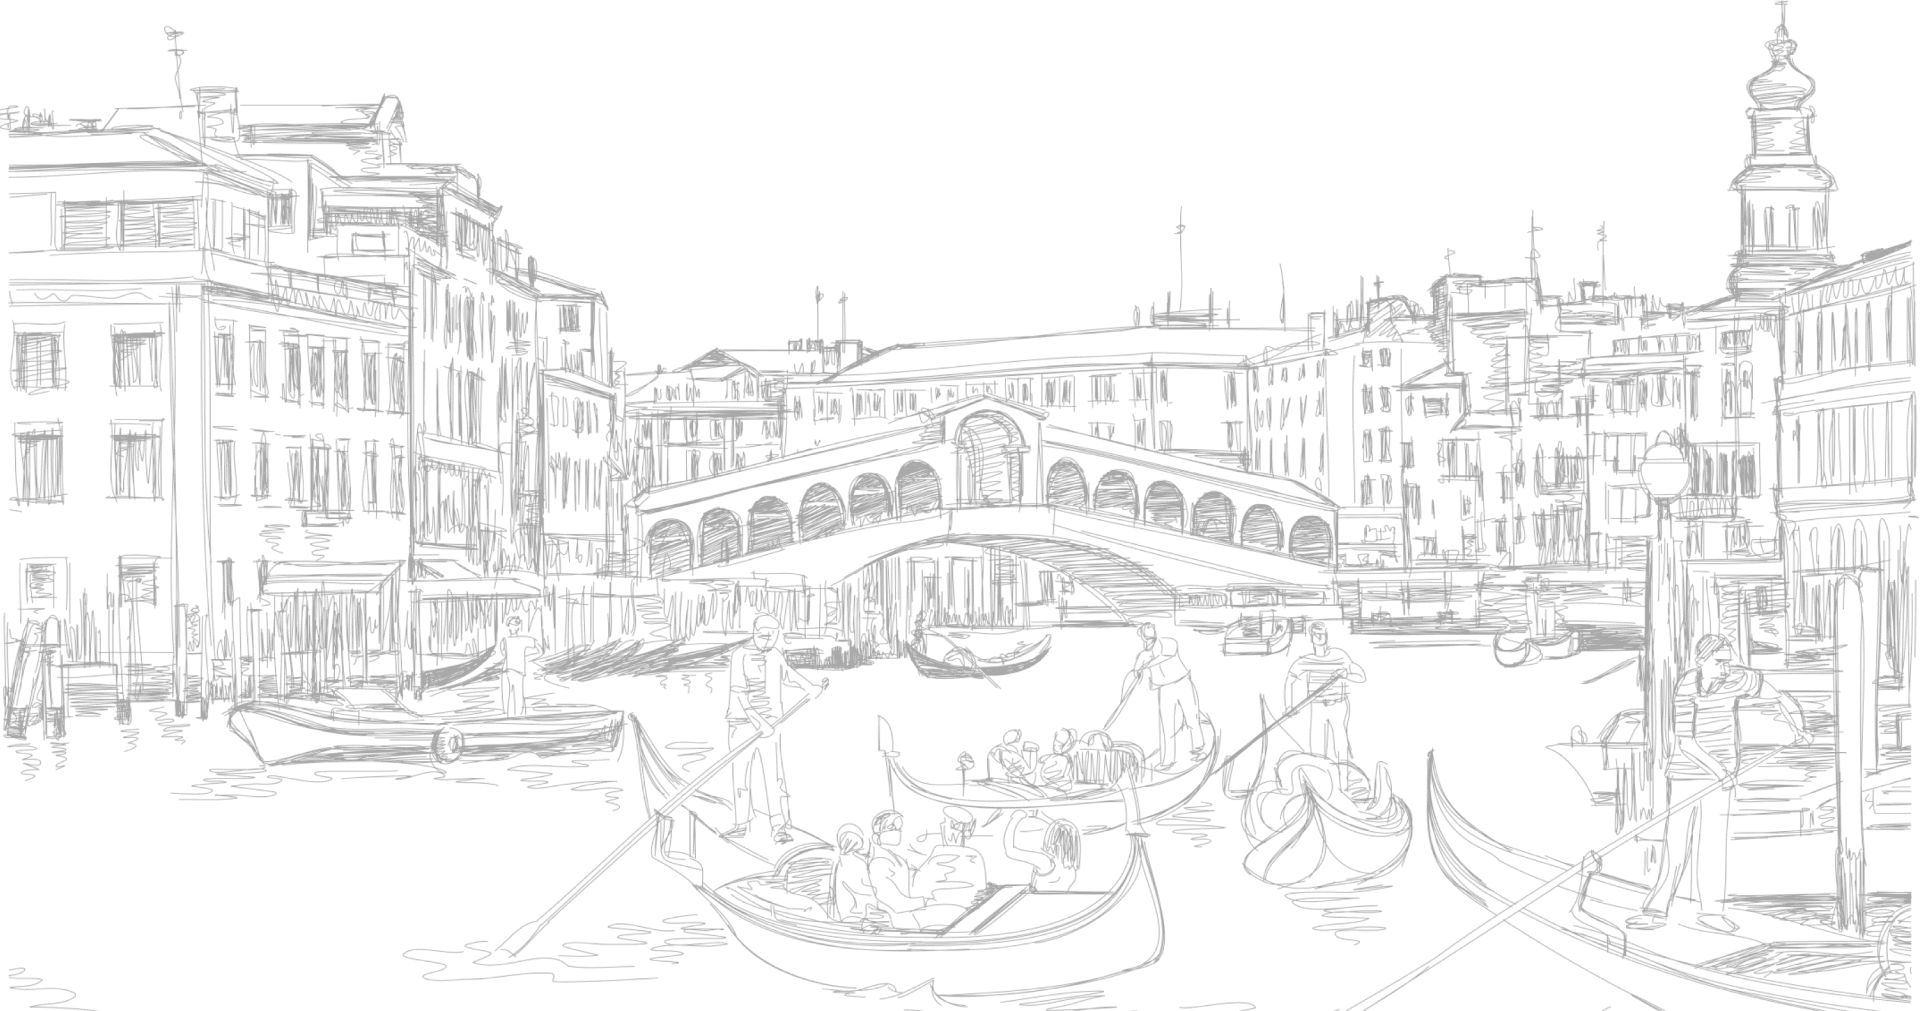 Venice: Venice là một trong những điểm đến lý tưởng nhất của Ý. Với các kênh nước thơ mộng, các cầu vàng và tòa nhà kiến trúc đẹp mắt, Venice là một thành phố lãng mạn và tuyệt vời để khám phá. Hãy đến với Venice để thưởng thức cà phê, thực phẩm ngon và tận hưởng không khí độc đáo của thành phố thơ mộng này.